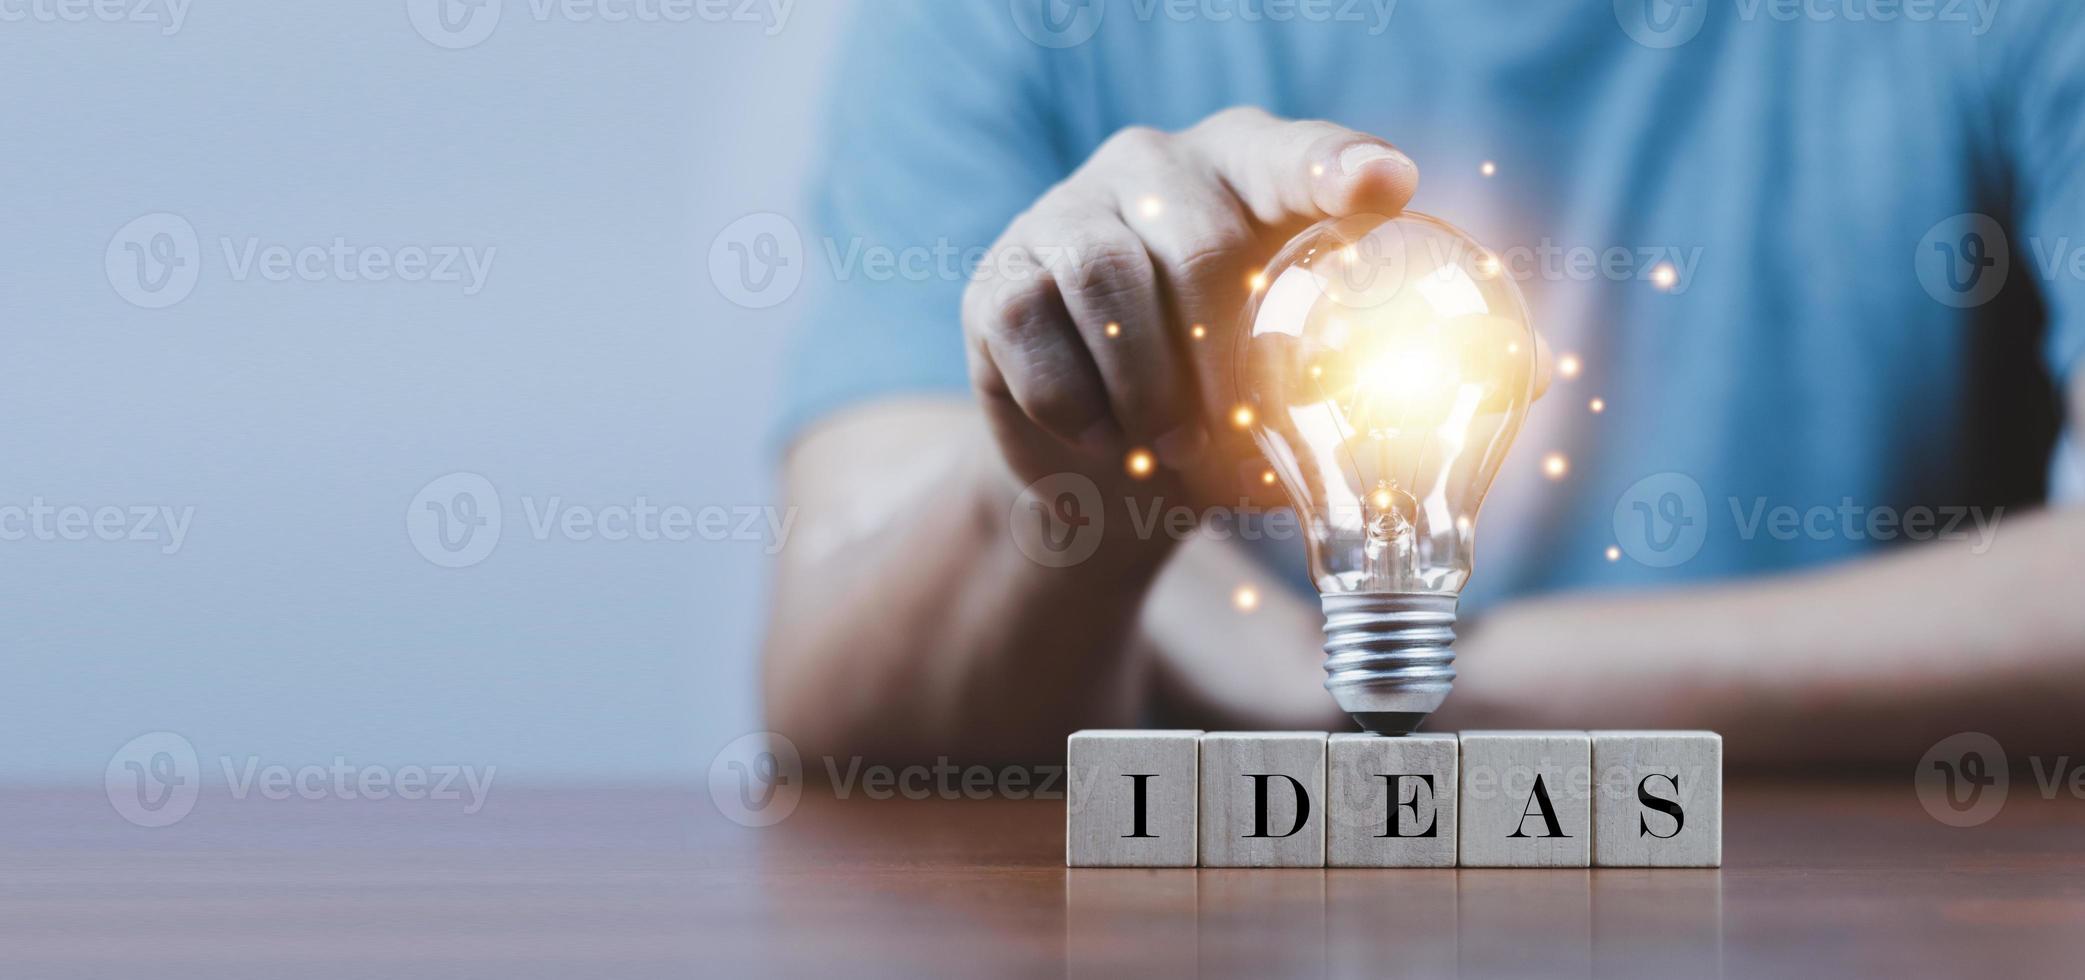 mano tocando una bombilla en un bloque de madera con ideas de palabras, nuevo concepto de idea con innovación e inspiración, tecnología innovadora en el concepto de ciencia y comunicación. foto